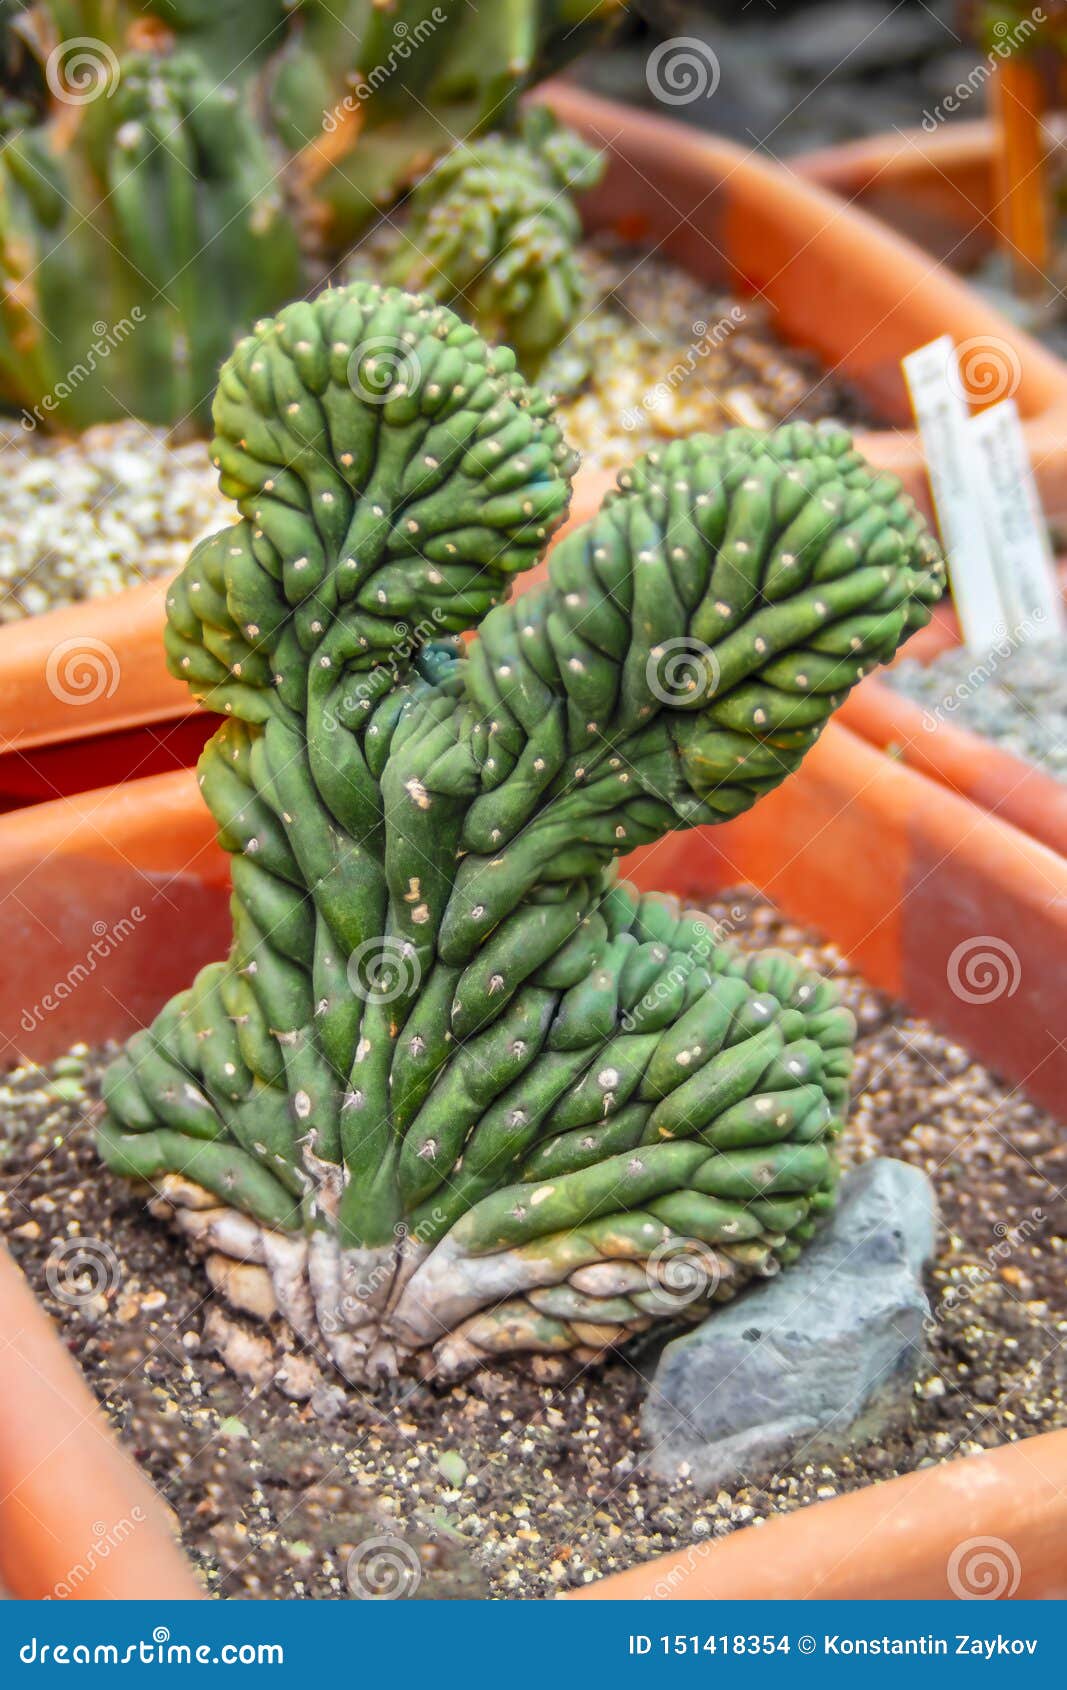 cactus forma cristata. unusual cactus in pot.